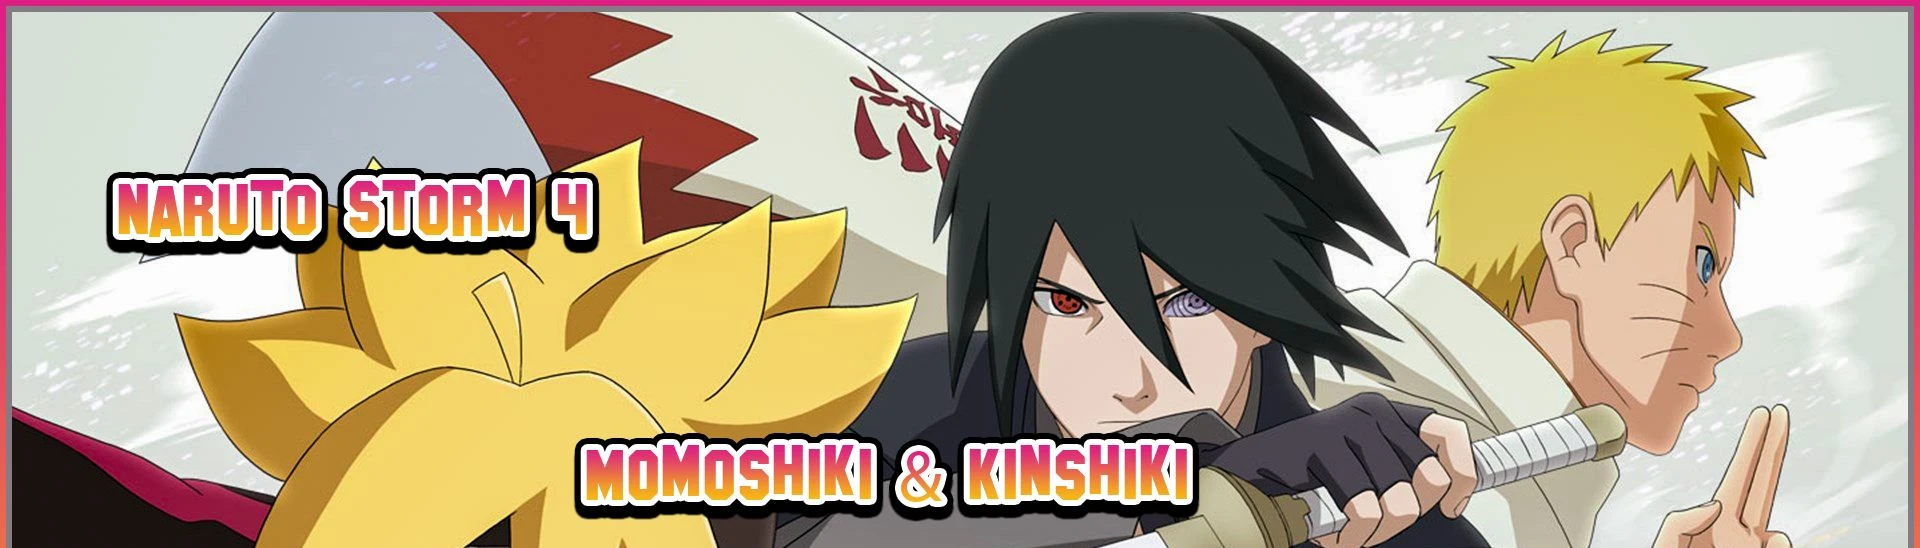 Momoshiki and Kinshiki!!, Narutopedia